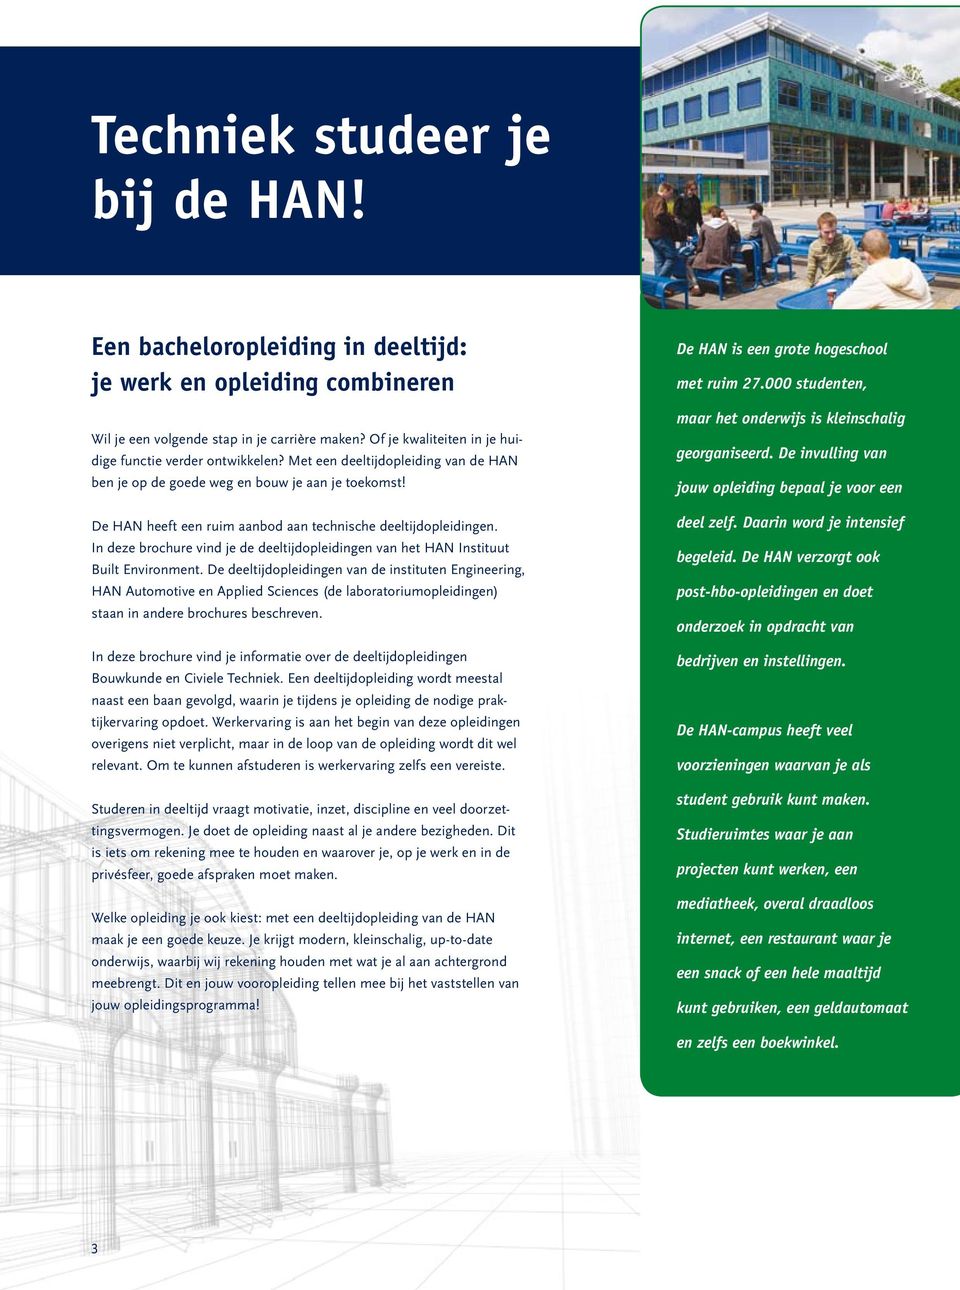 De HAN heeft een ruim aanbod aan technische deeltijdopleidingen. In deze brochure vind je de deeltijdopleidingen van het HAN Instituut Built Environment.